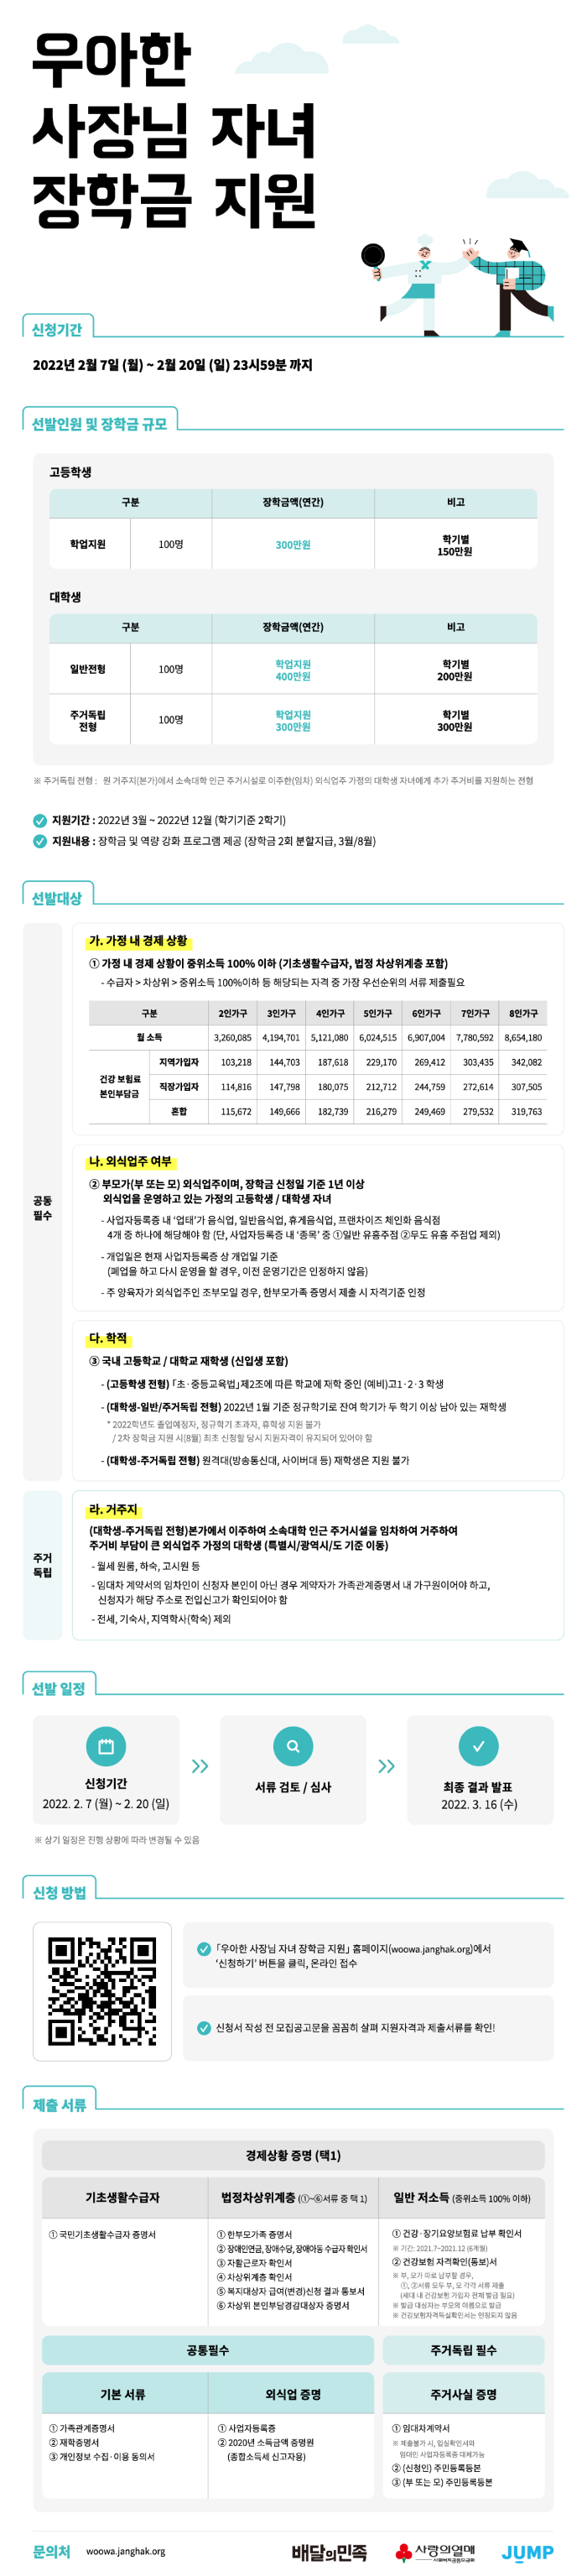 01 우아한사장님 자녀장학금 지원 장학생 모집 홍보물(기본 웹플라이어).png